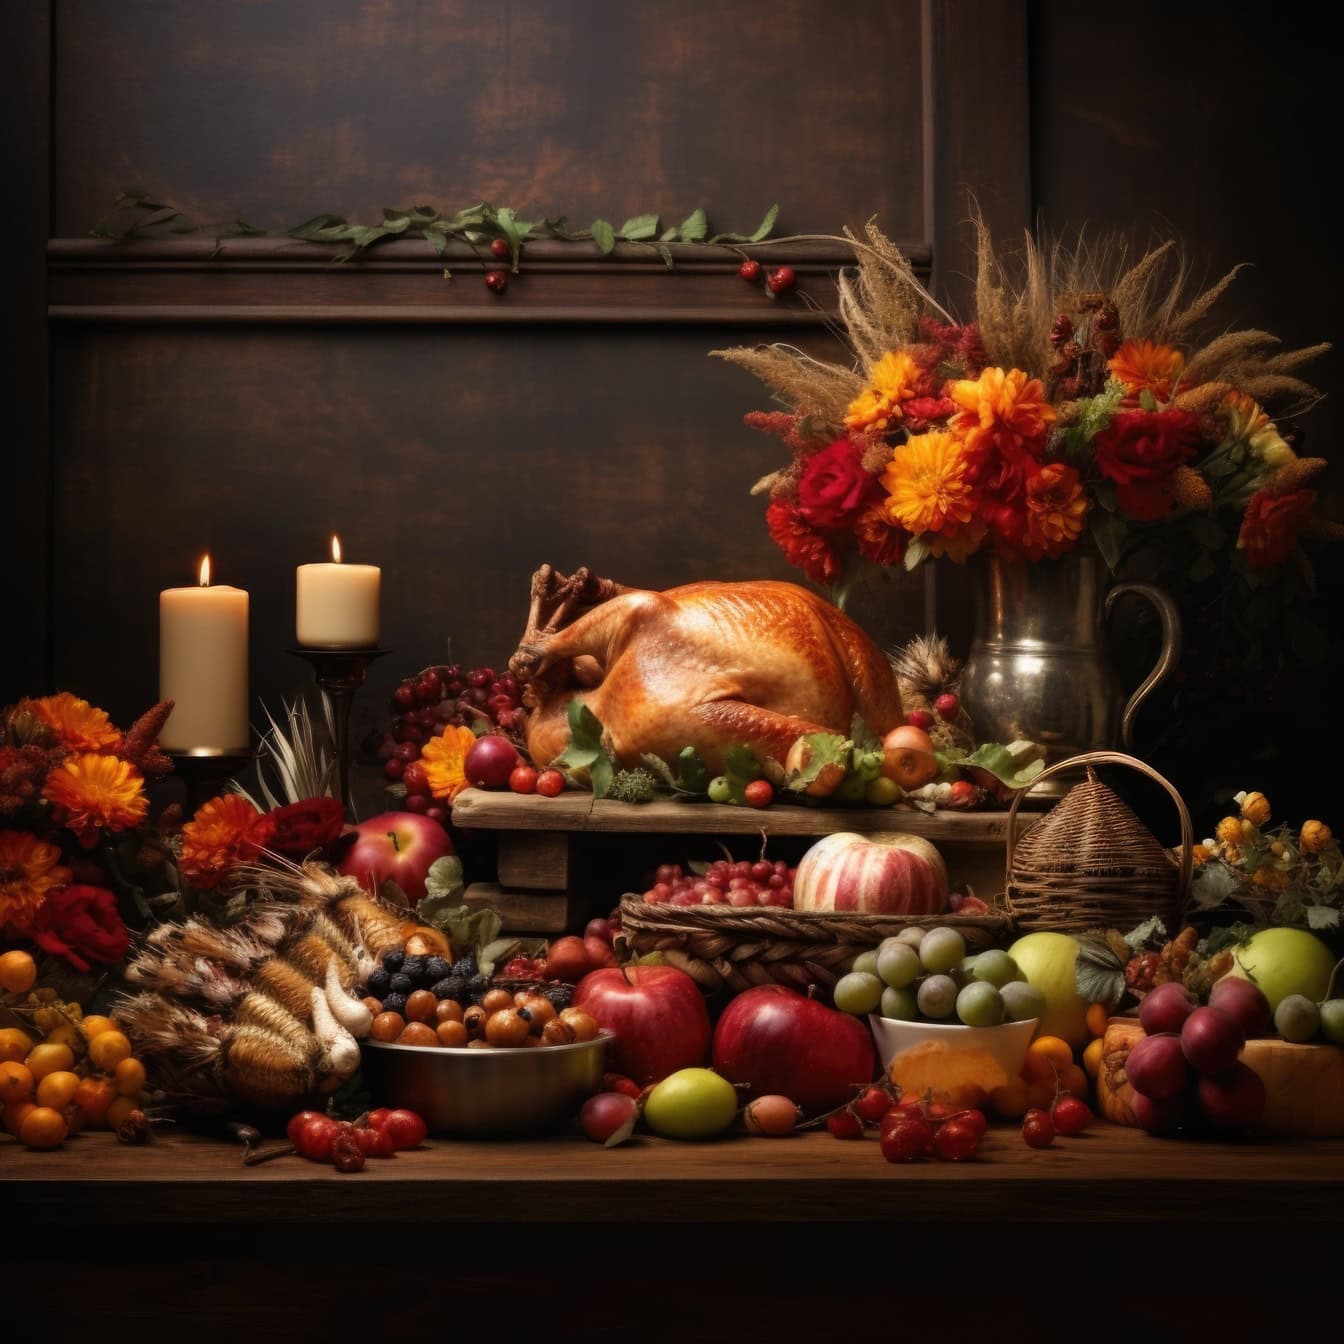 Jedálenský stôl na Deň vďakyvzdania s pečeným moriakom a rôznym ovocím a kvetmi vo váze, ideálna šablóna kompozície zátišia